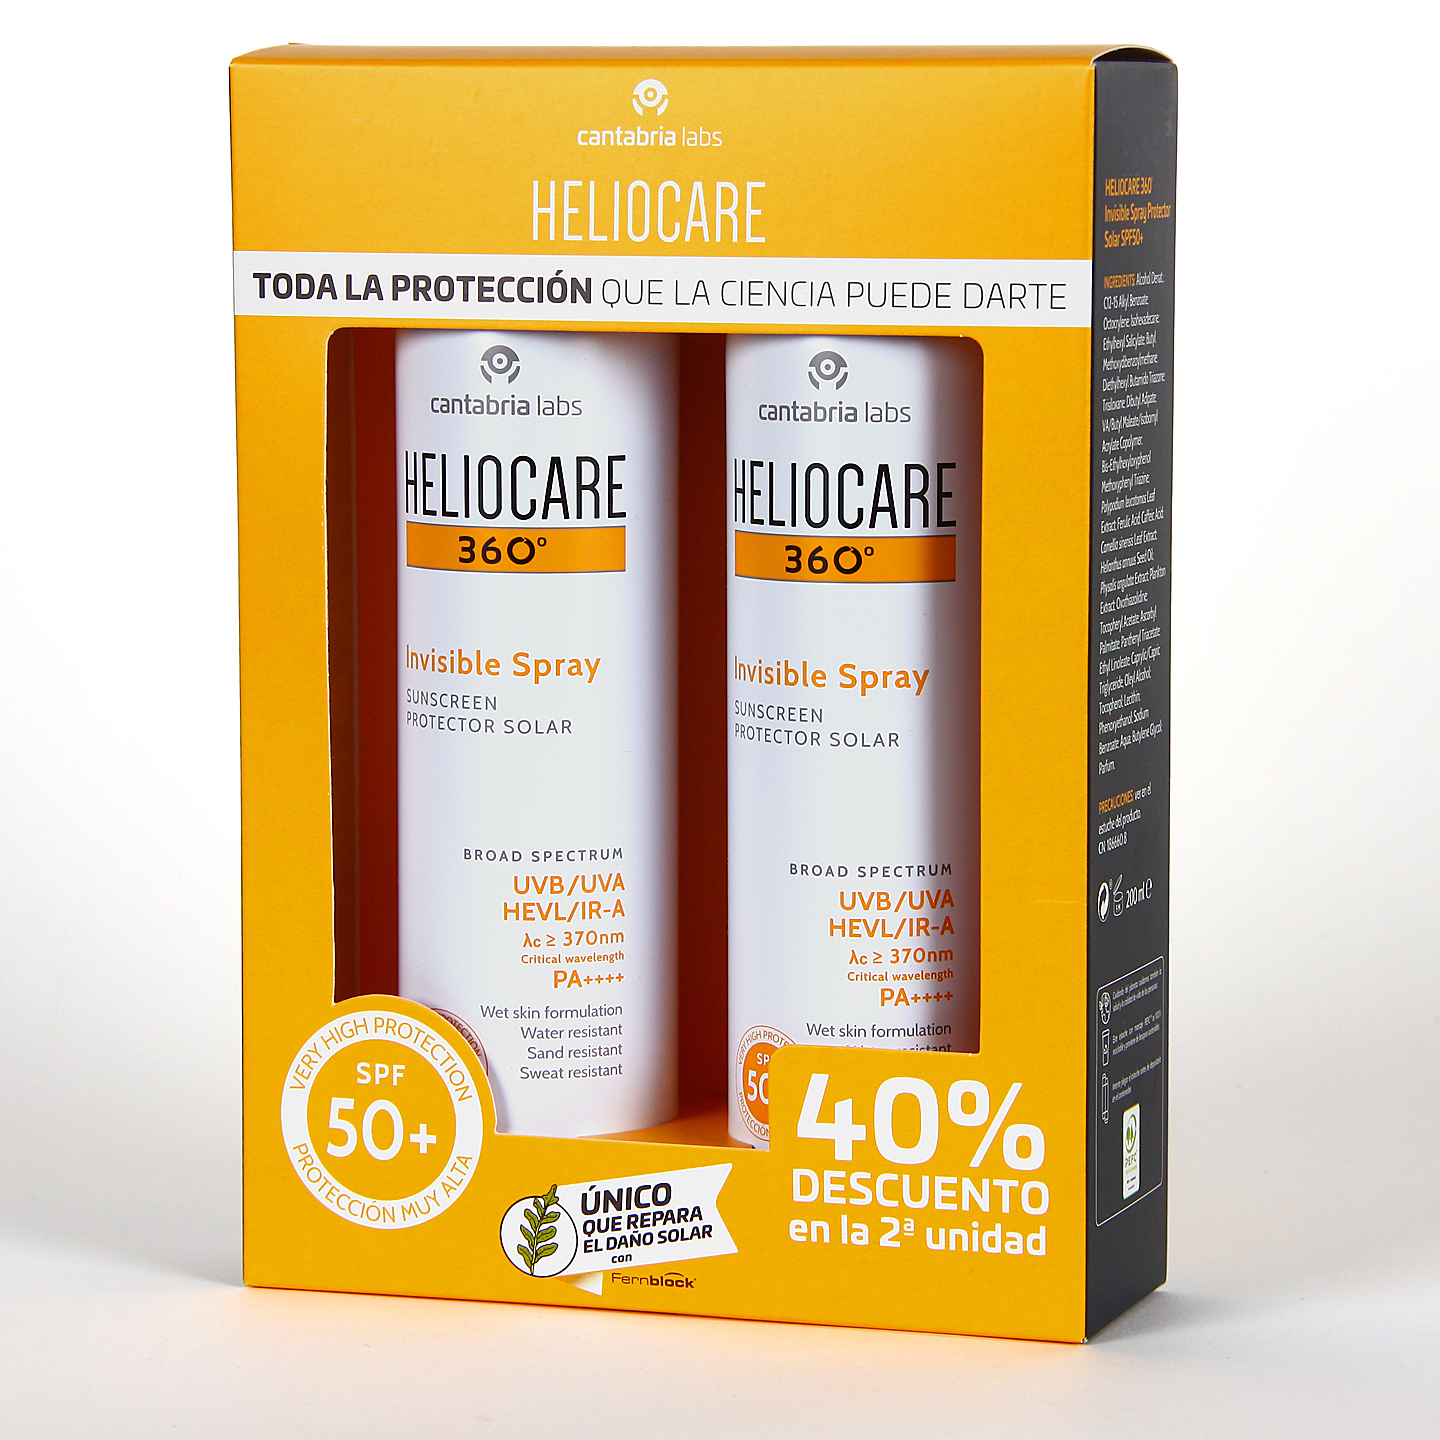 Heliocare Spray Transparente al mejor precio con el Pack Duplo